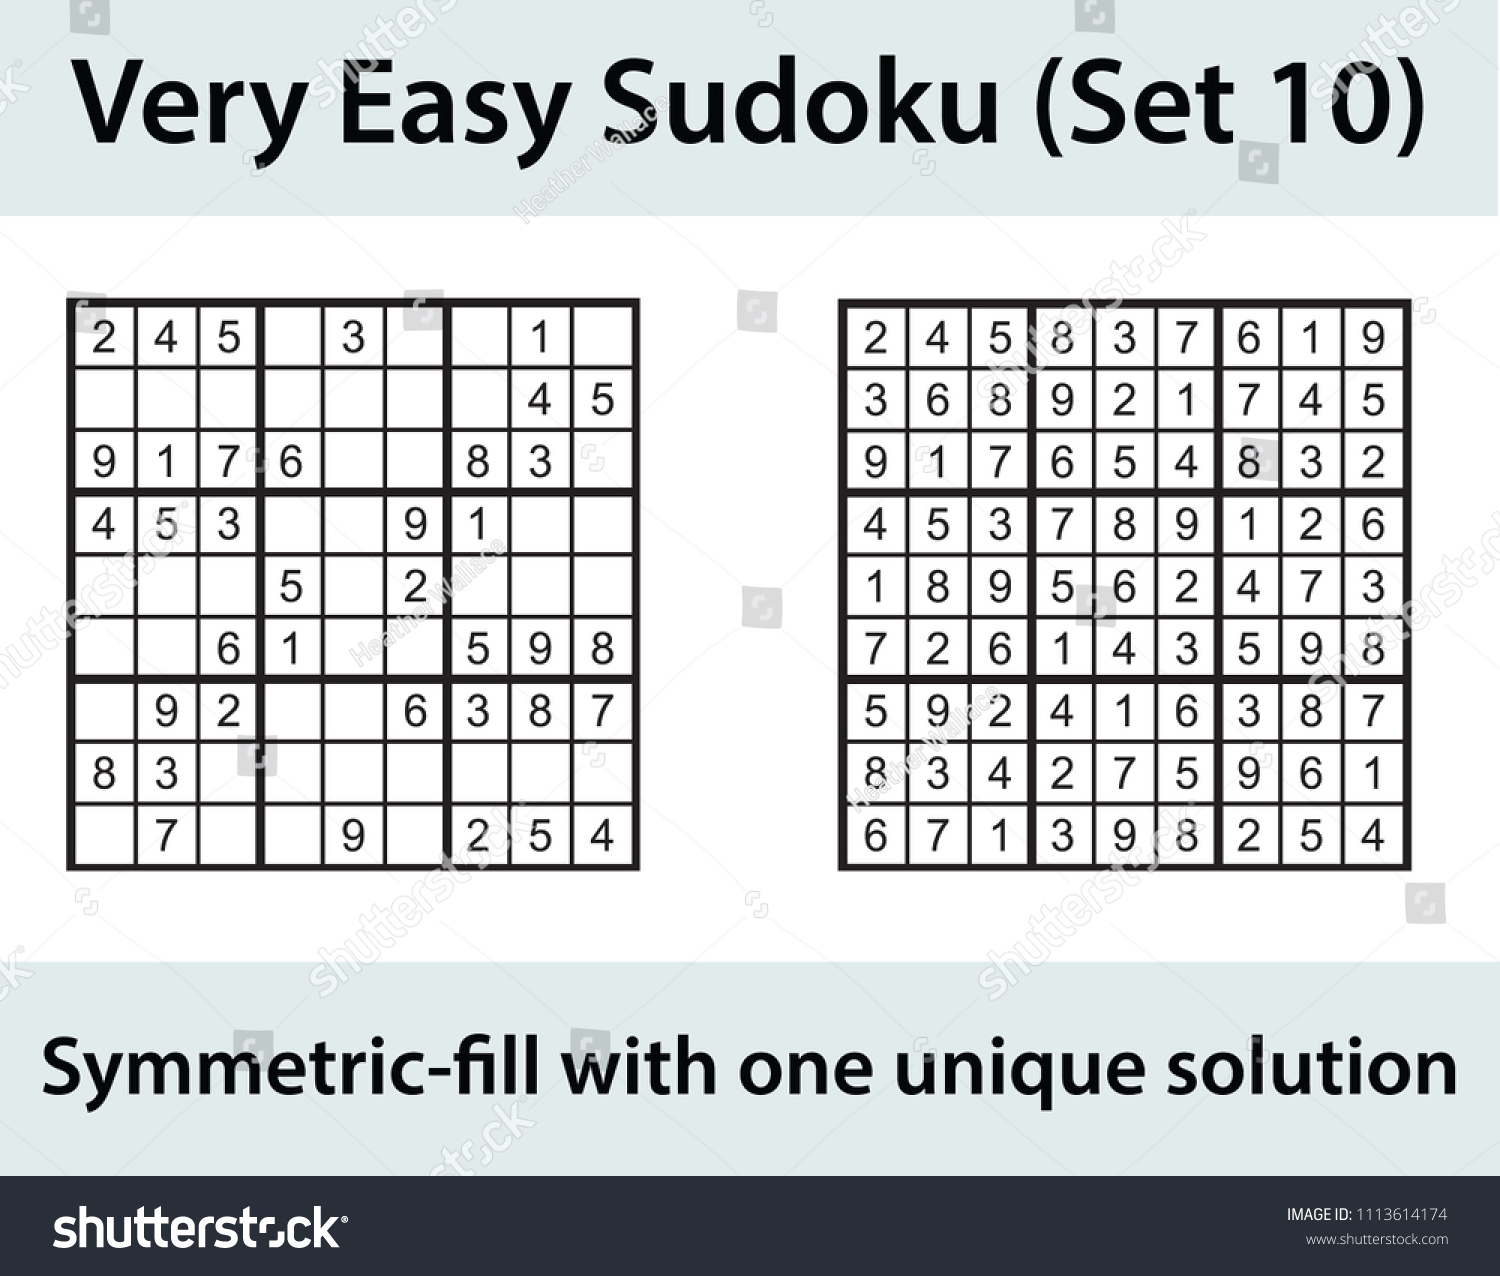 Image Vectorielle De Stock De Image Vectorielle Puzzle De dedans Sudoku Facile Avec Solution